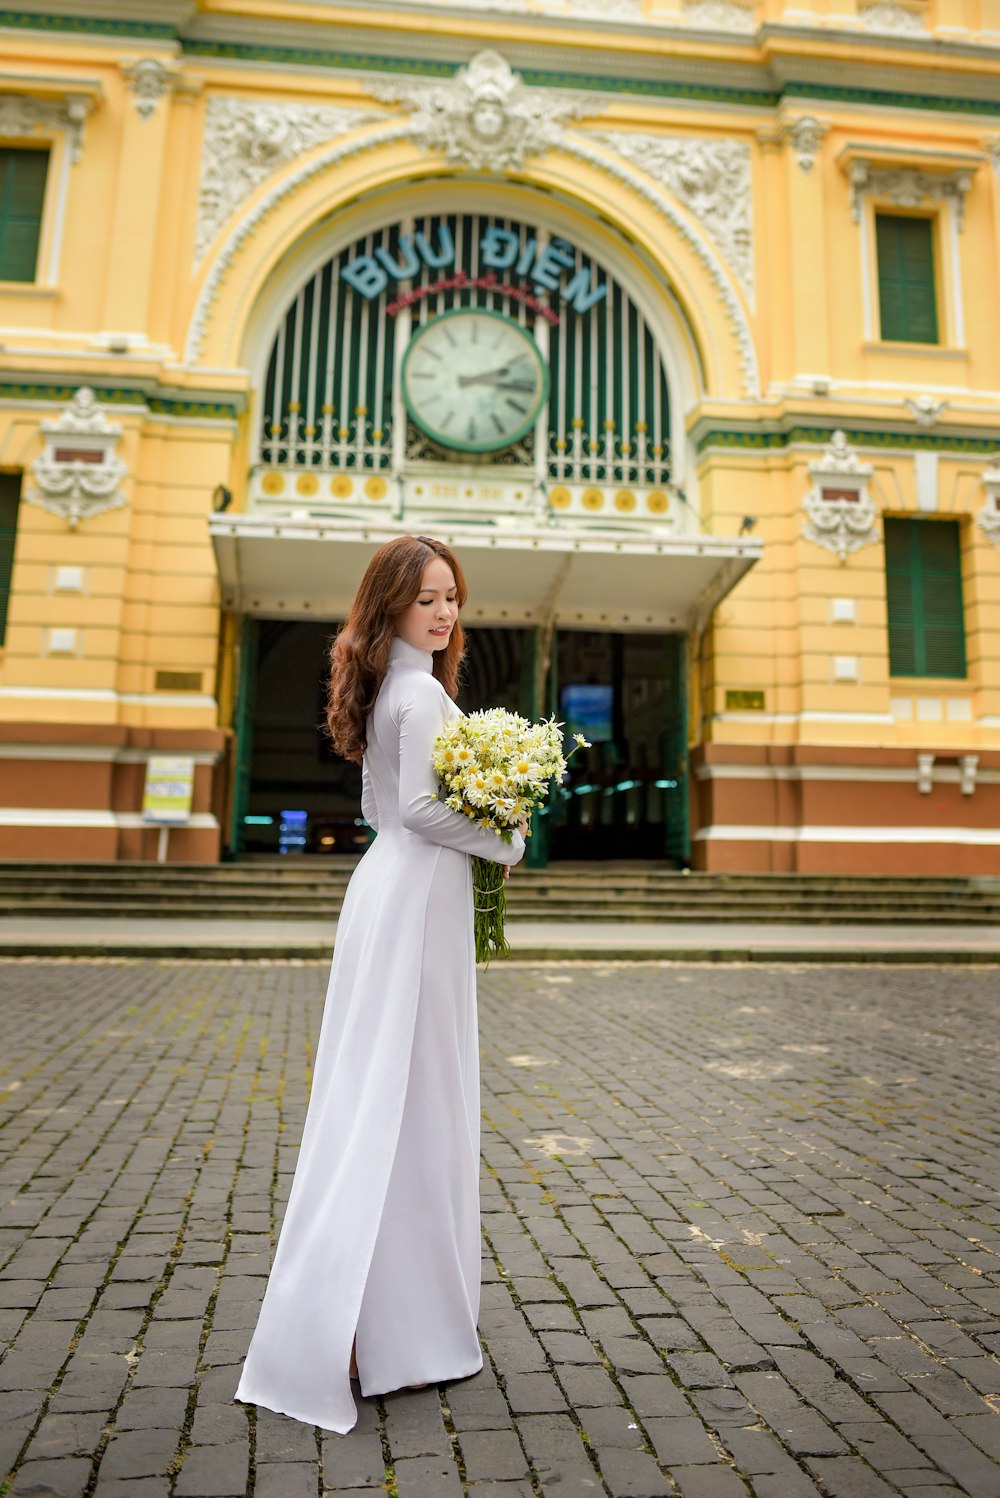 Frau im weißen Brautkleid mit Blumenstrauß auf grauem Ziegelboden tagsüber